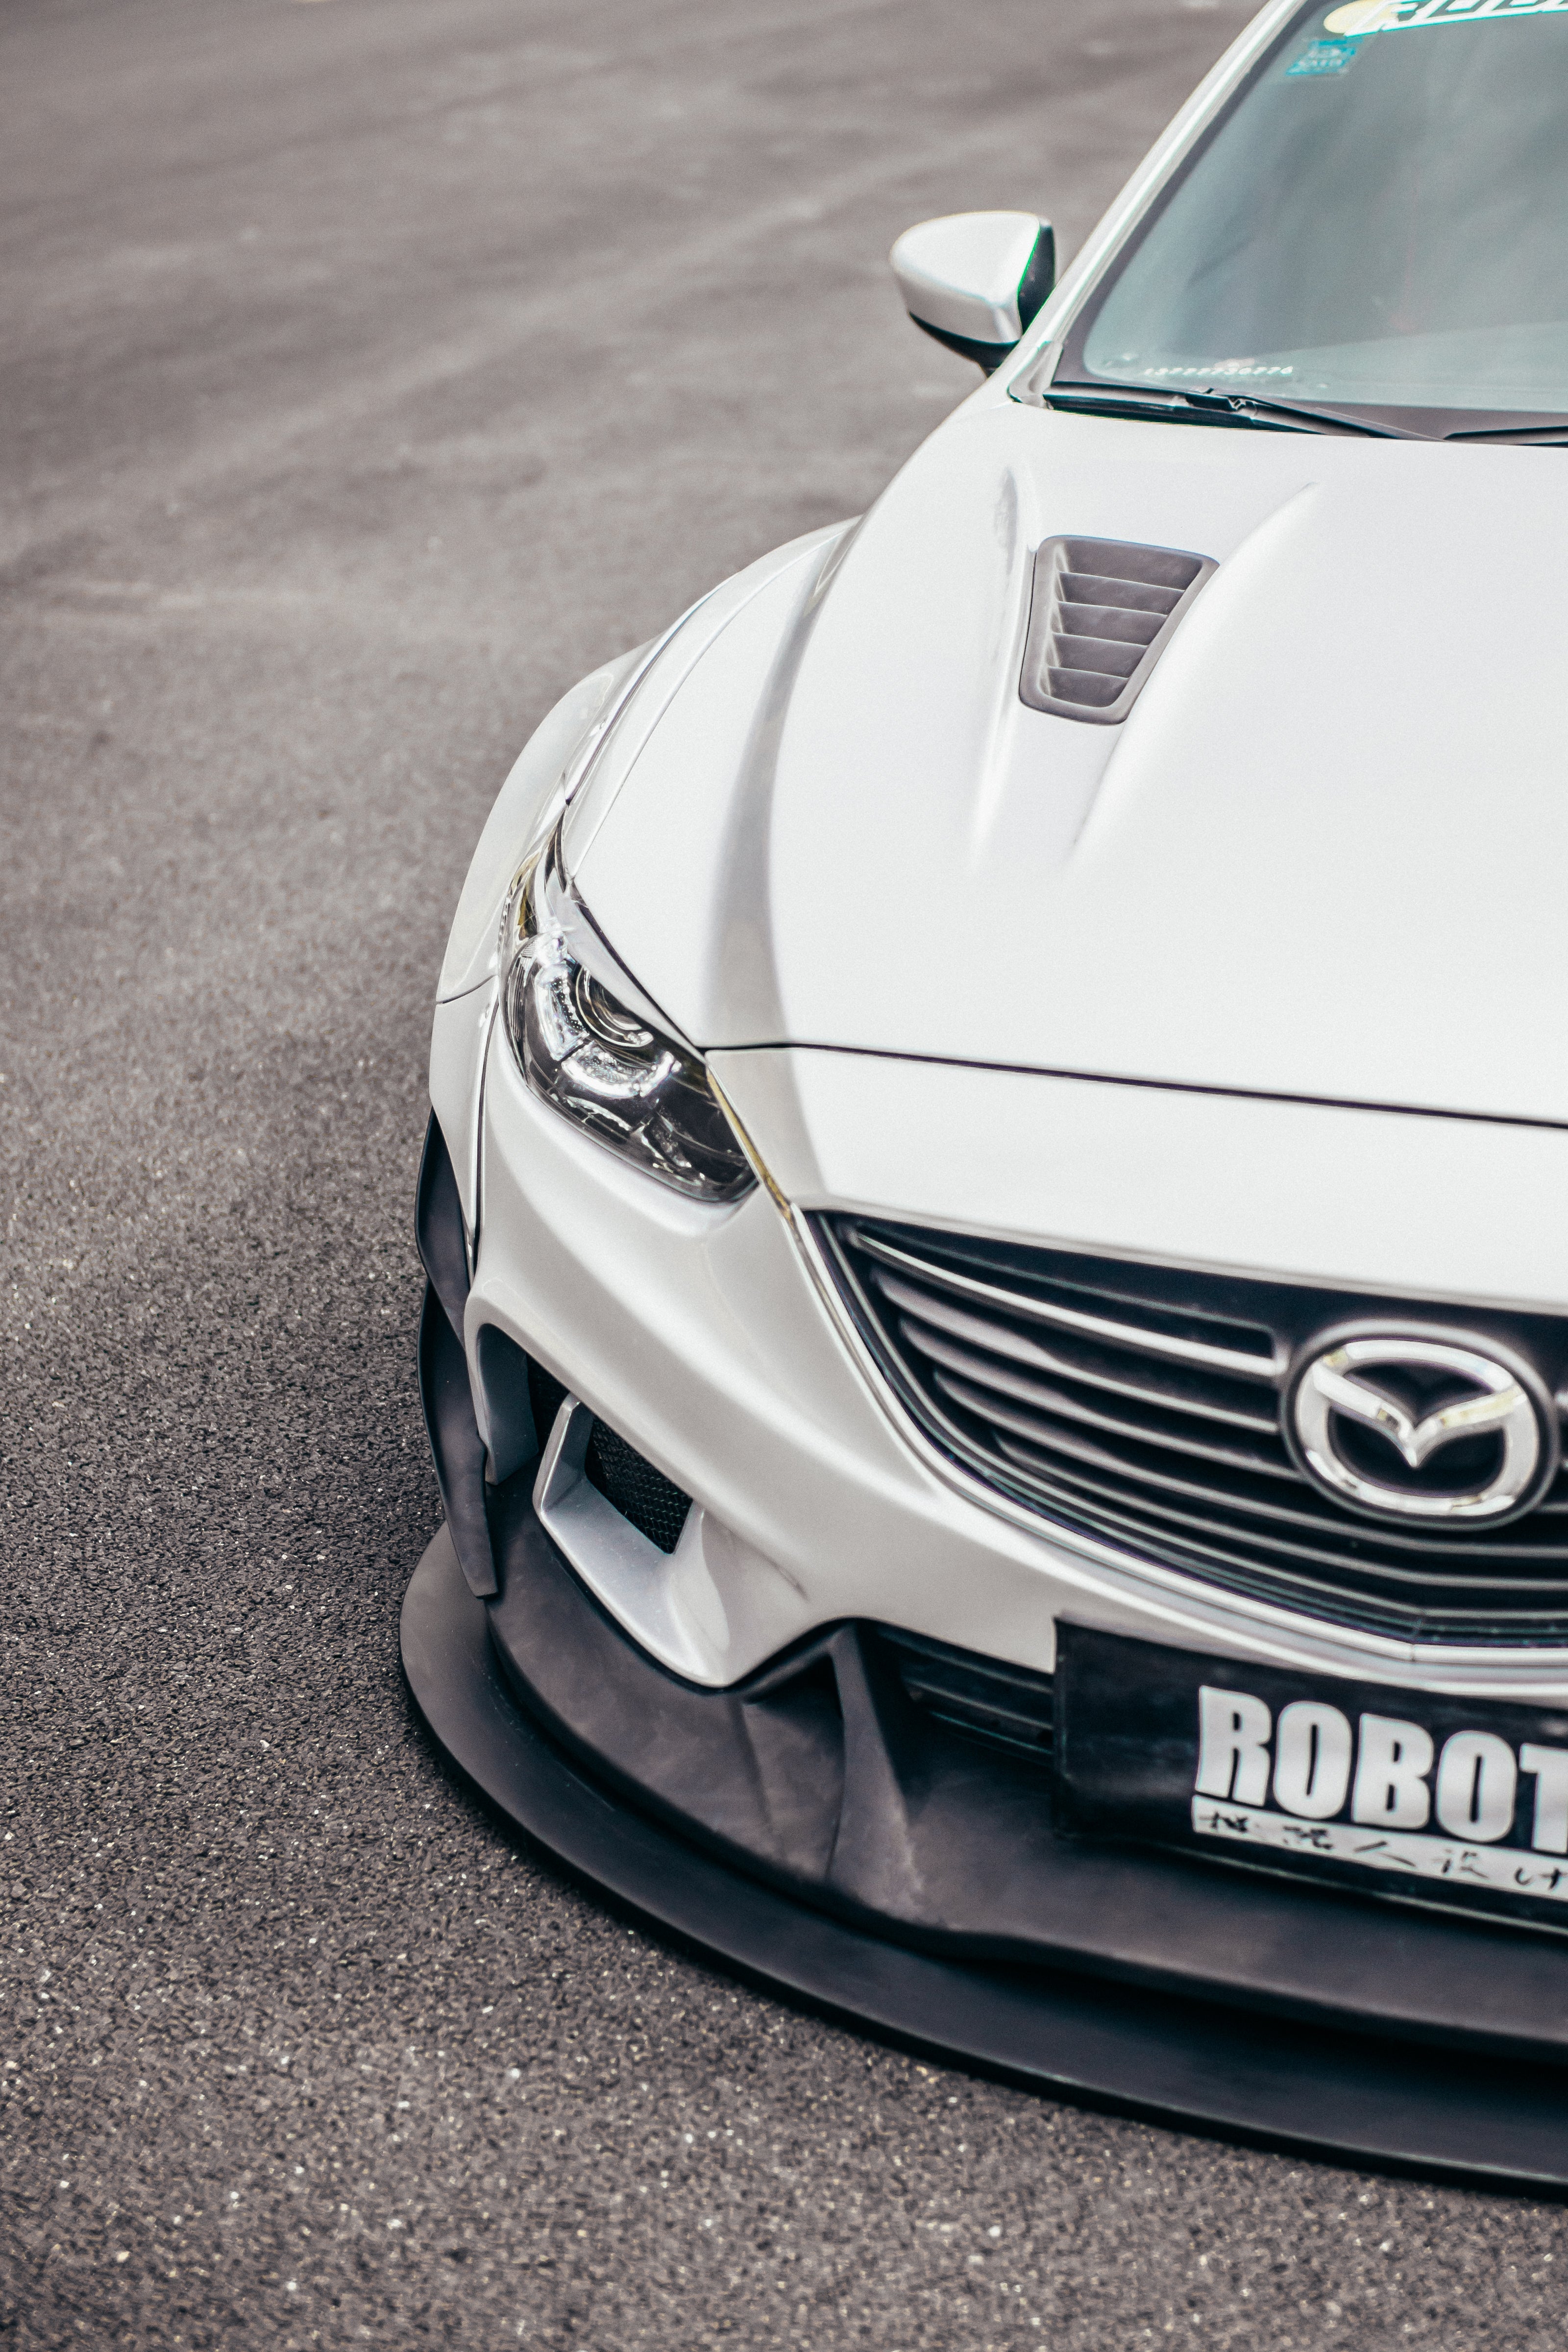 ROBOT CRAFTSMAN Mazda 6 Canards 2014-2017 FRP or Carbon Fiber